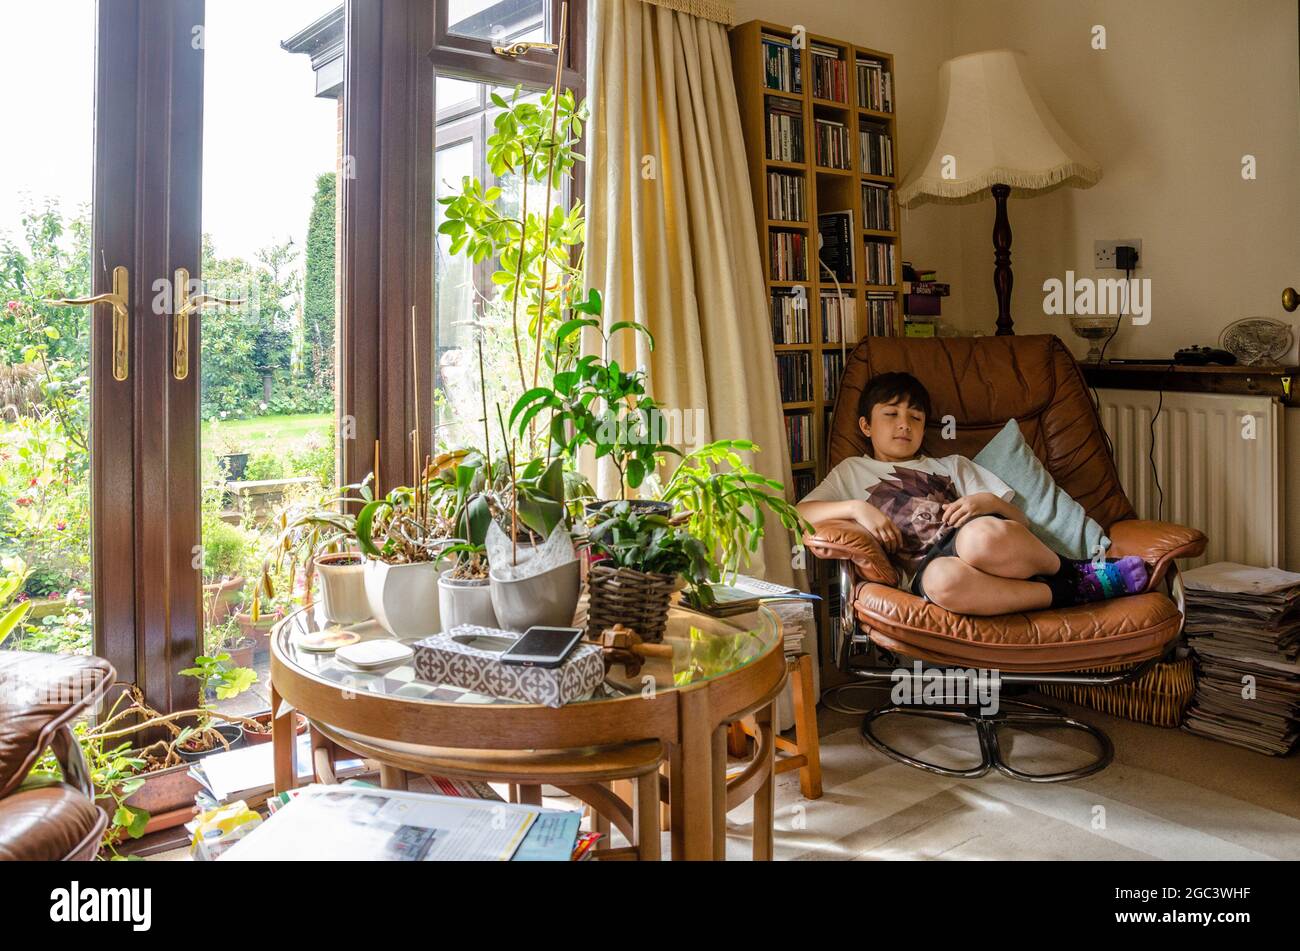 Ein Junge entspannt sich in einem bequemen Stuhl mit einem Glastisch, der mit Zimmerpflanzen bedeckt ist. Eine heimelige Lifestyle-Szene aus einem Familienhaus. Stockfoto